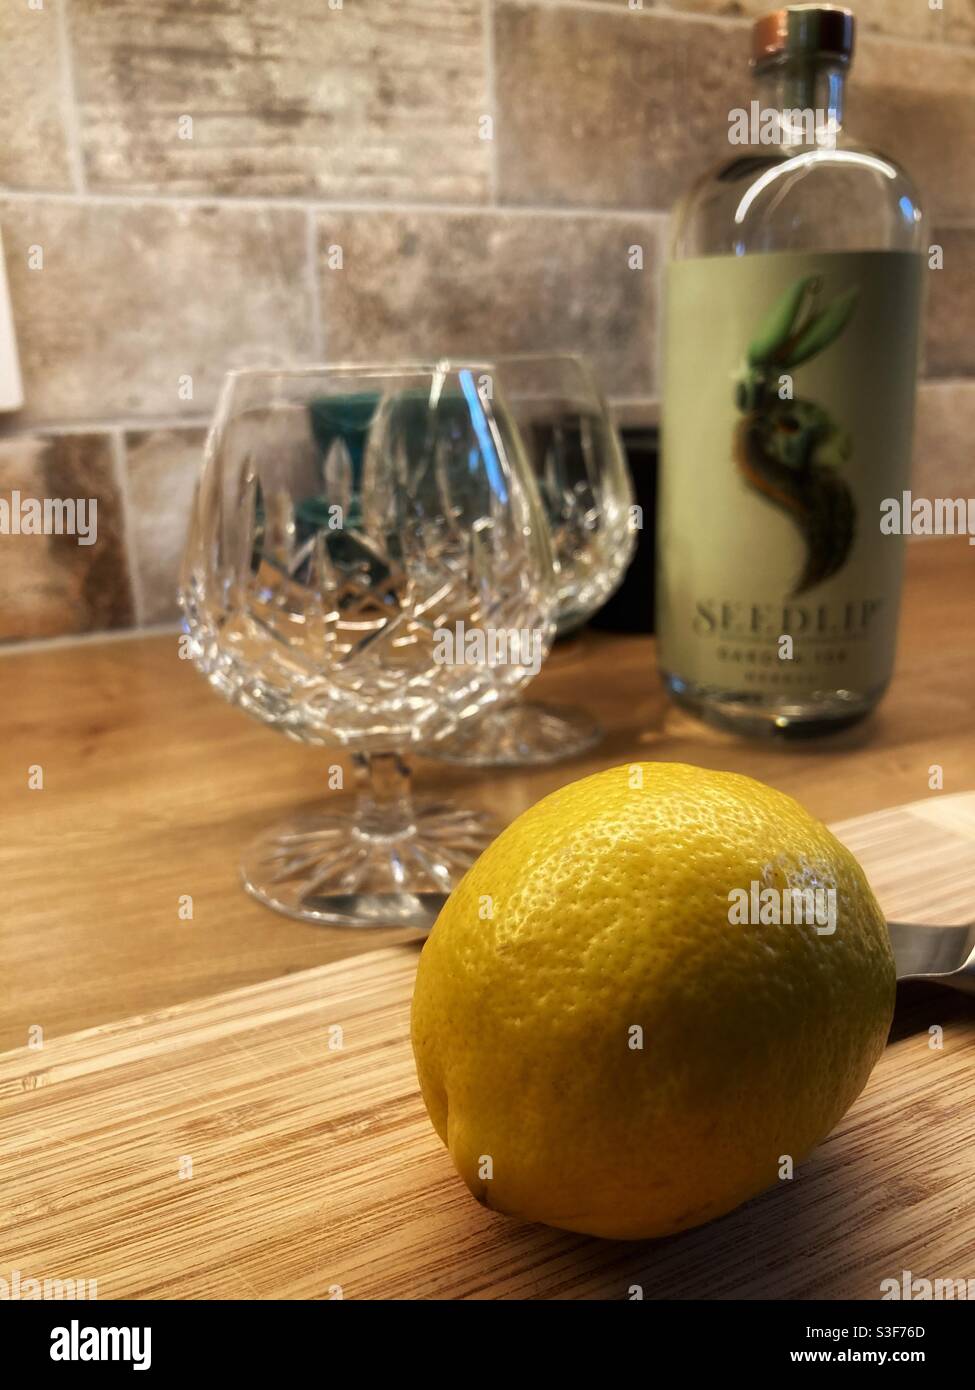 Seedlip alkoholfreie destillierte Spirituosen und tonische Getränke werden vorbereitet - Zitrone, die im Vordergrund geschnitten werden soll Stockfoto